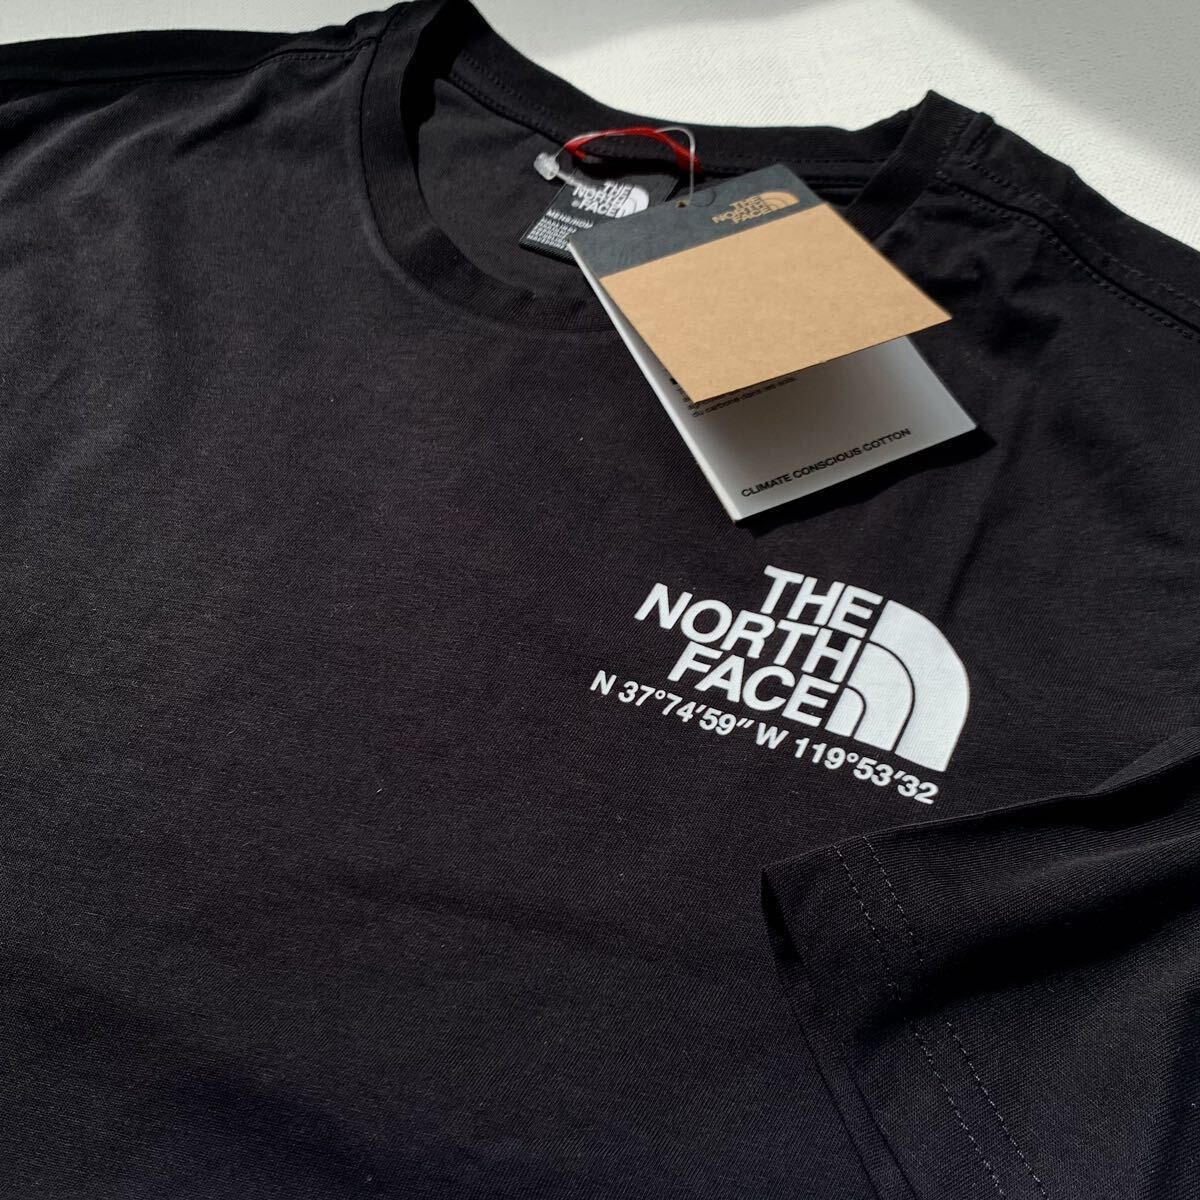 L 新品 ノースフェイス THE NORTH FACE COORDINATES TEE ロゴ ハーフドーム 座標 半袖 Tシャツ 黒 メンズ 海外企画 日本未入荷 送料無料の画像4